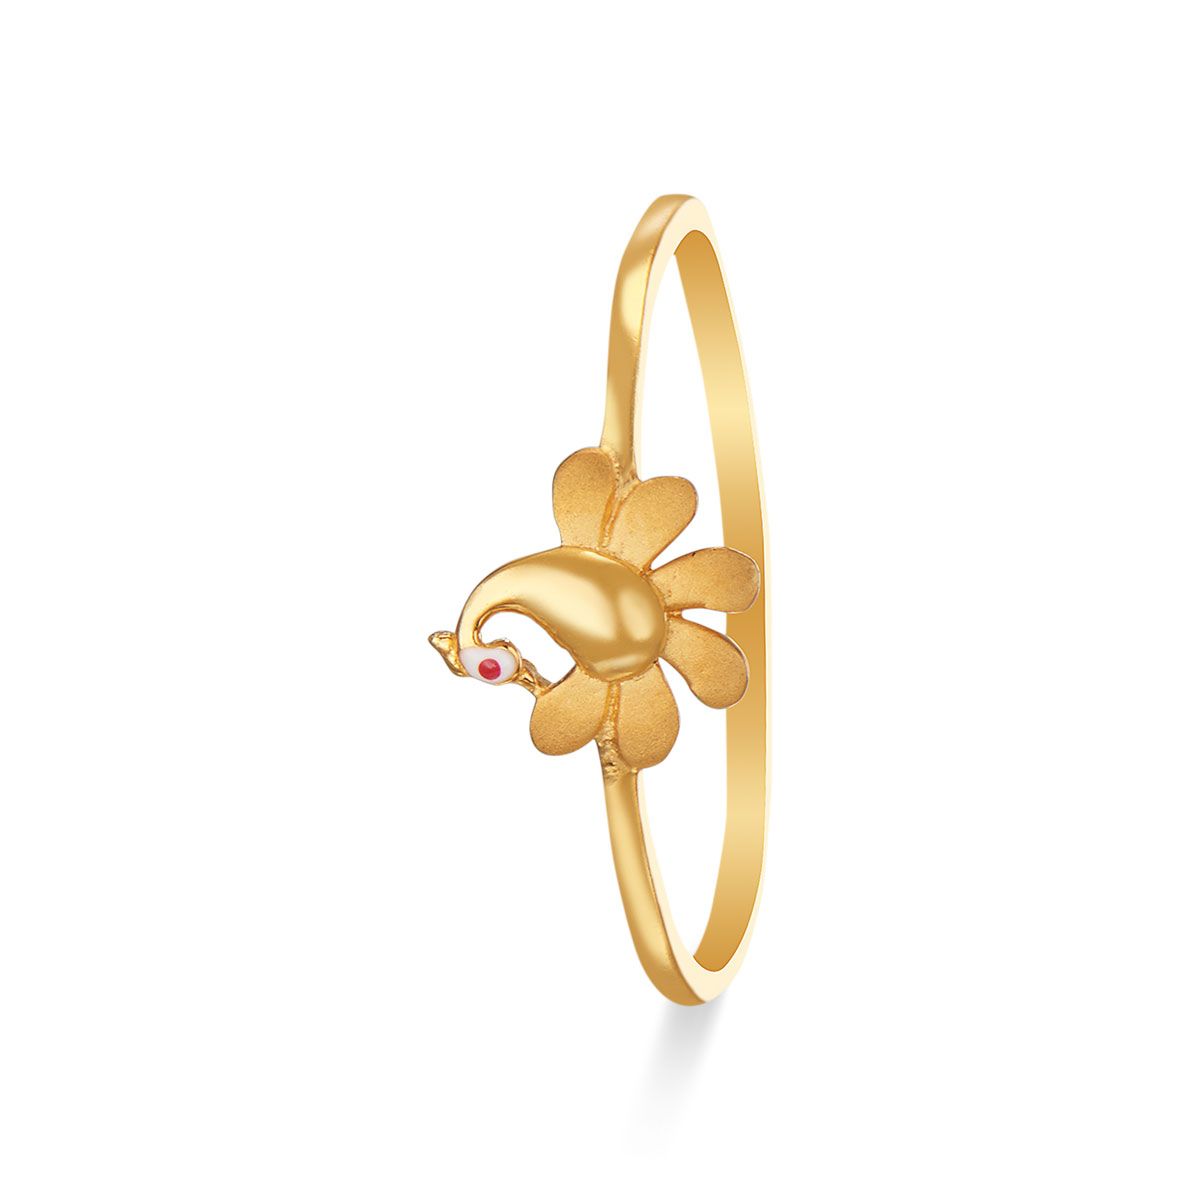 Red Coral Gold Ring (Design AC9) | GemPundit